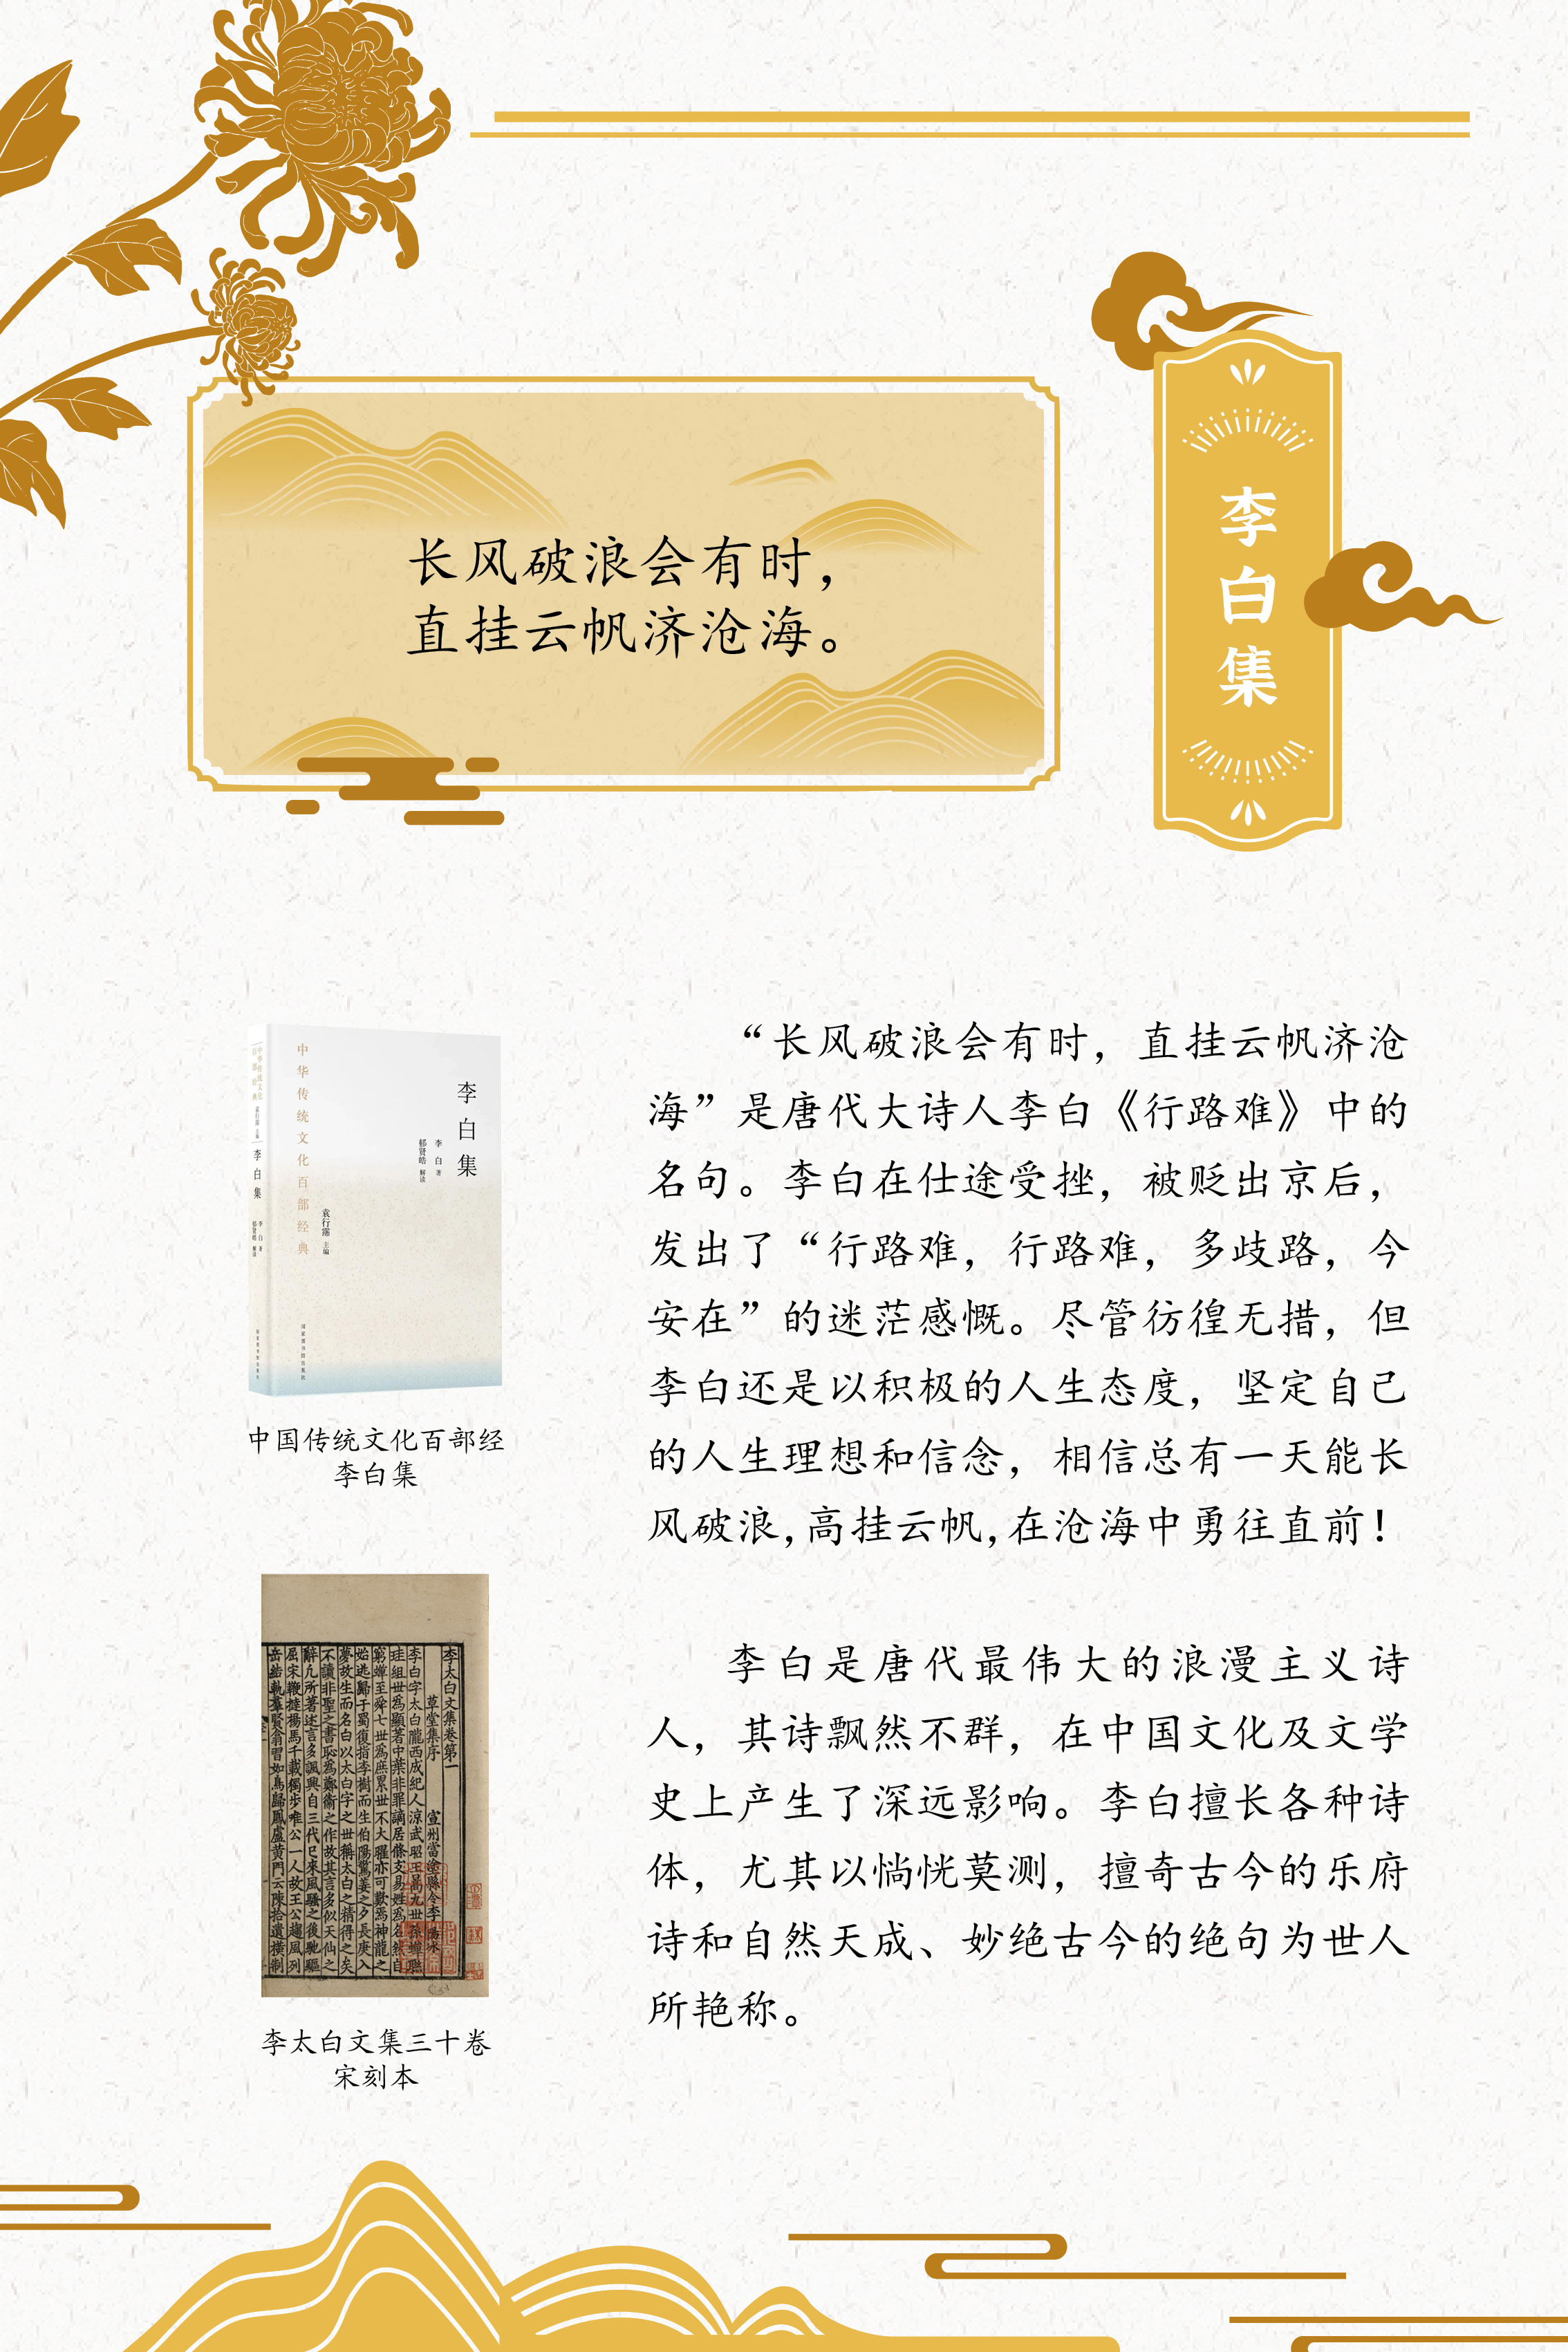 典籍里的中国智慧——《中华传统文化百部经典》阅读推广展_图38